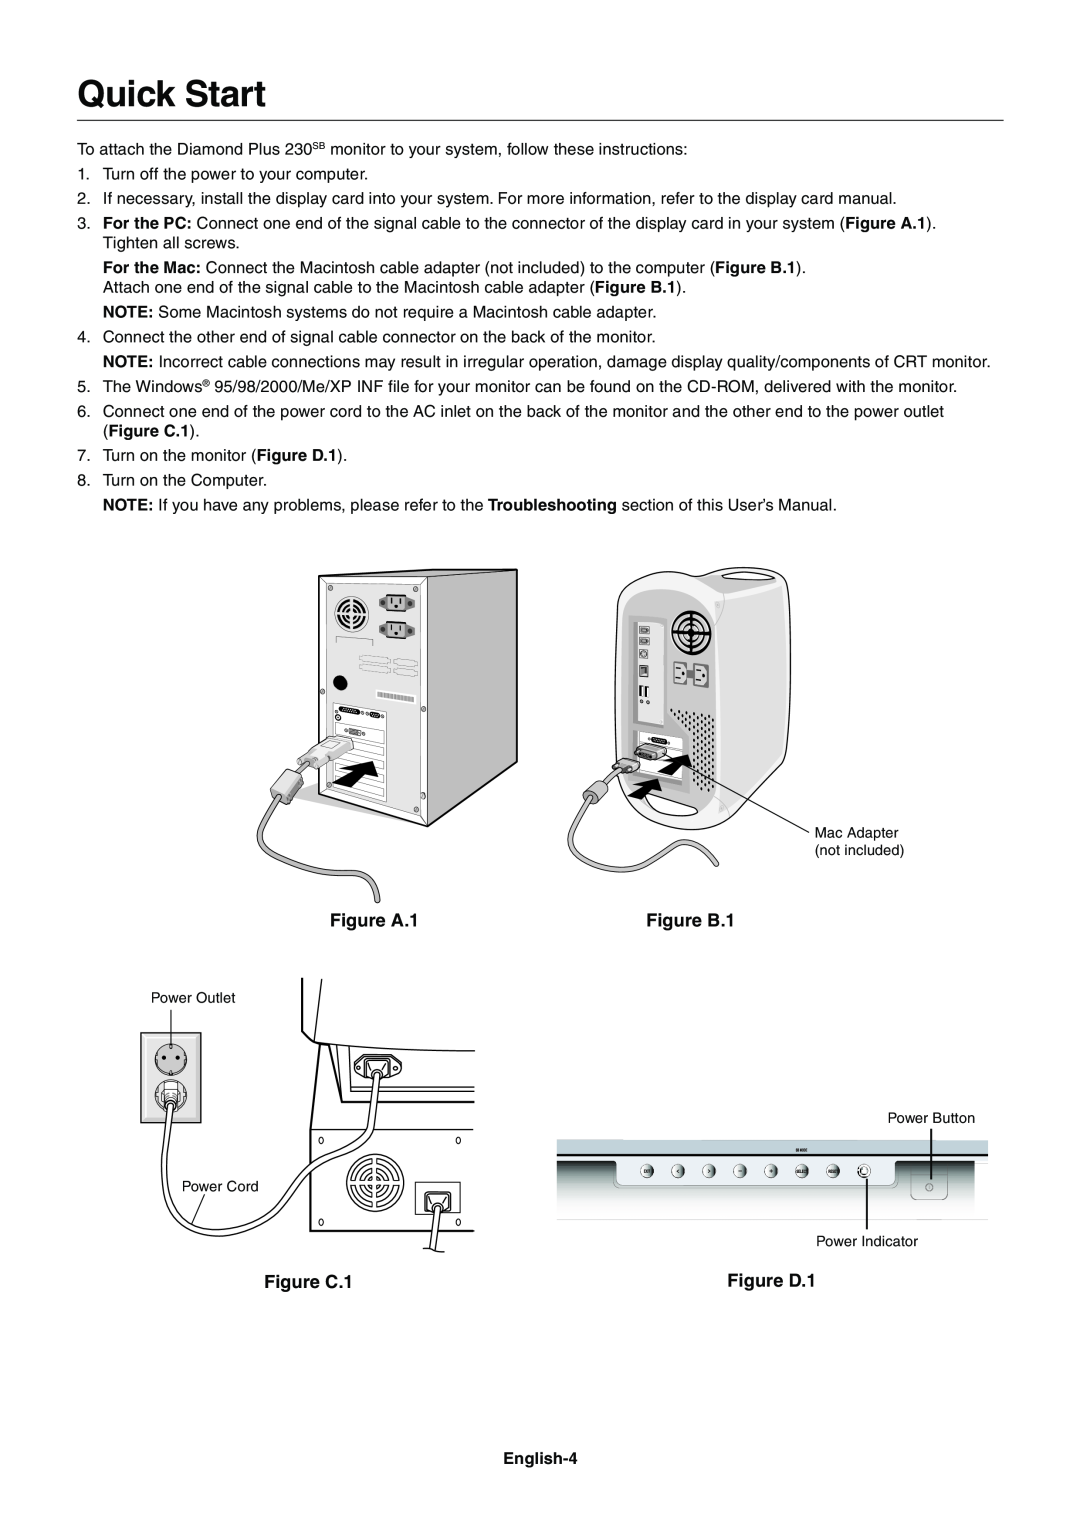 Mitsubishi Electronics 230SB user manual Quick Start, Figure A.1, Figure B.1, Figure C.1, Figure D.1 